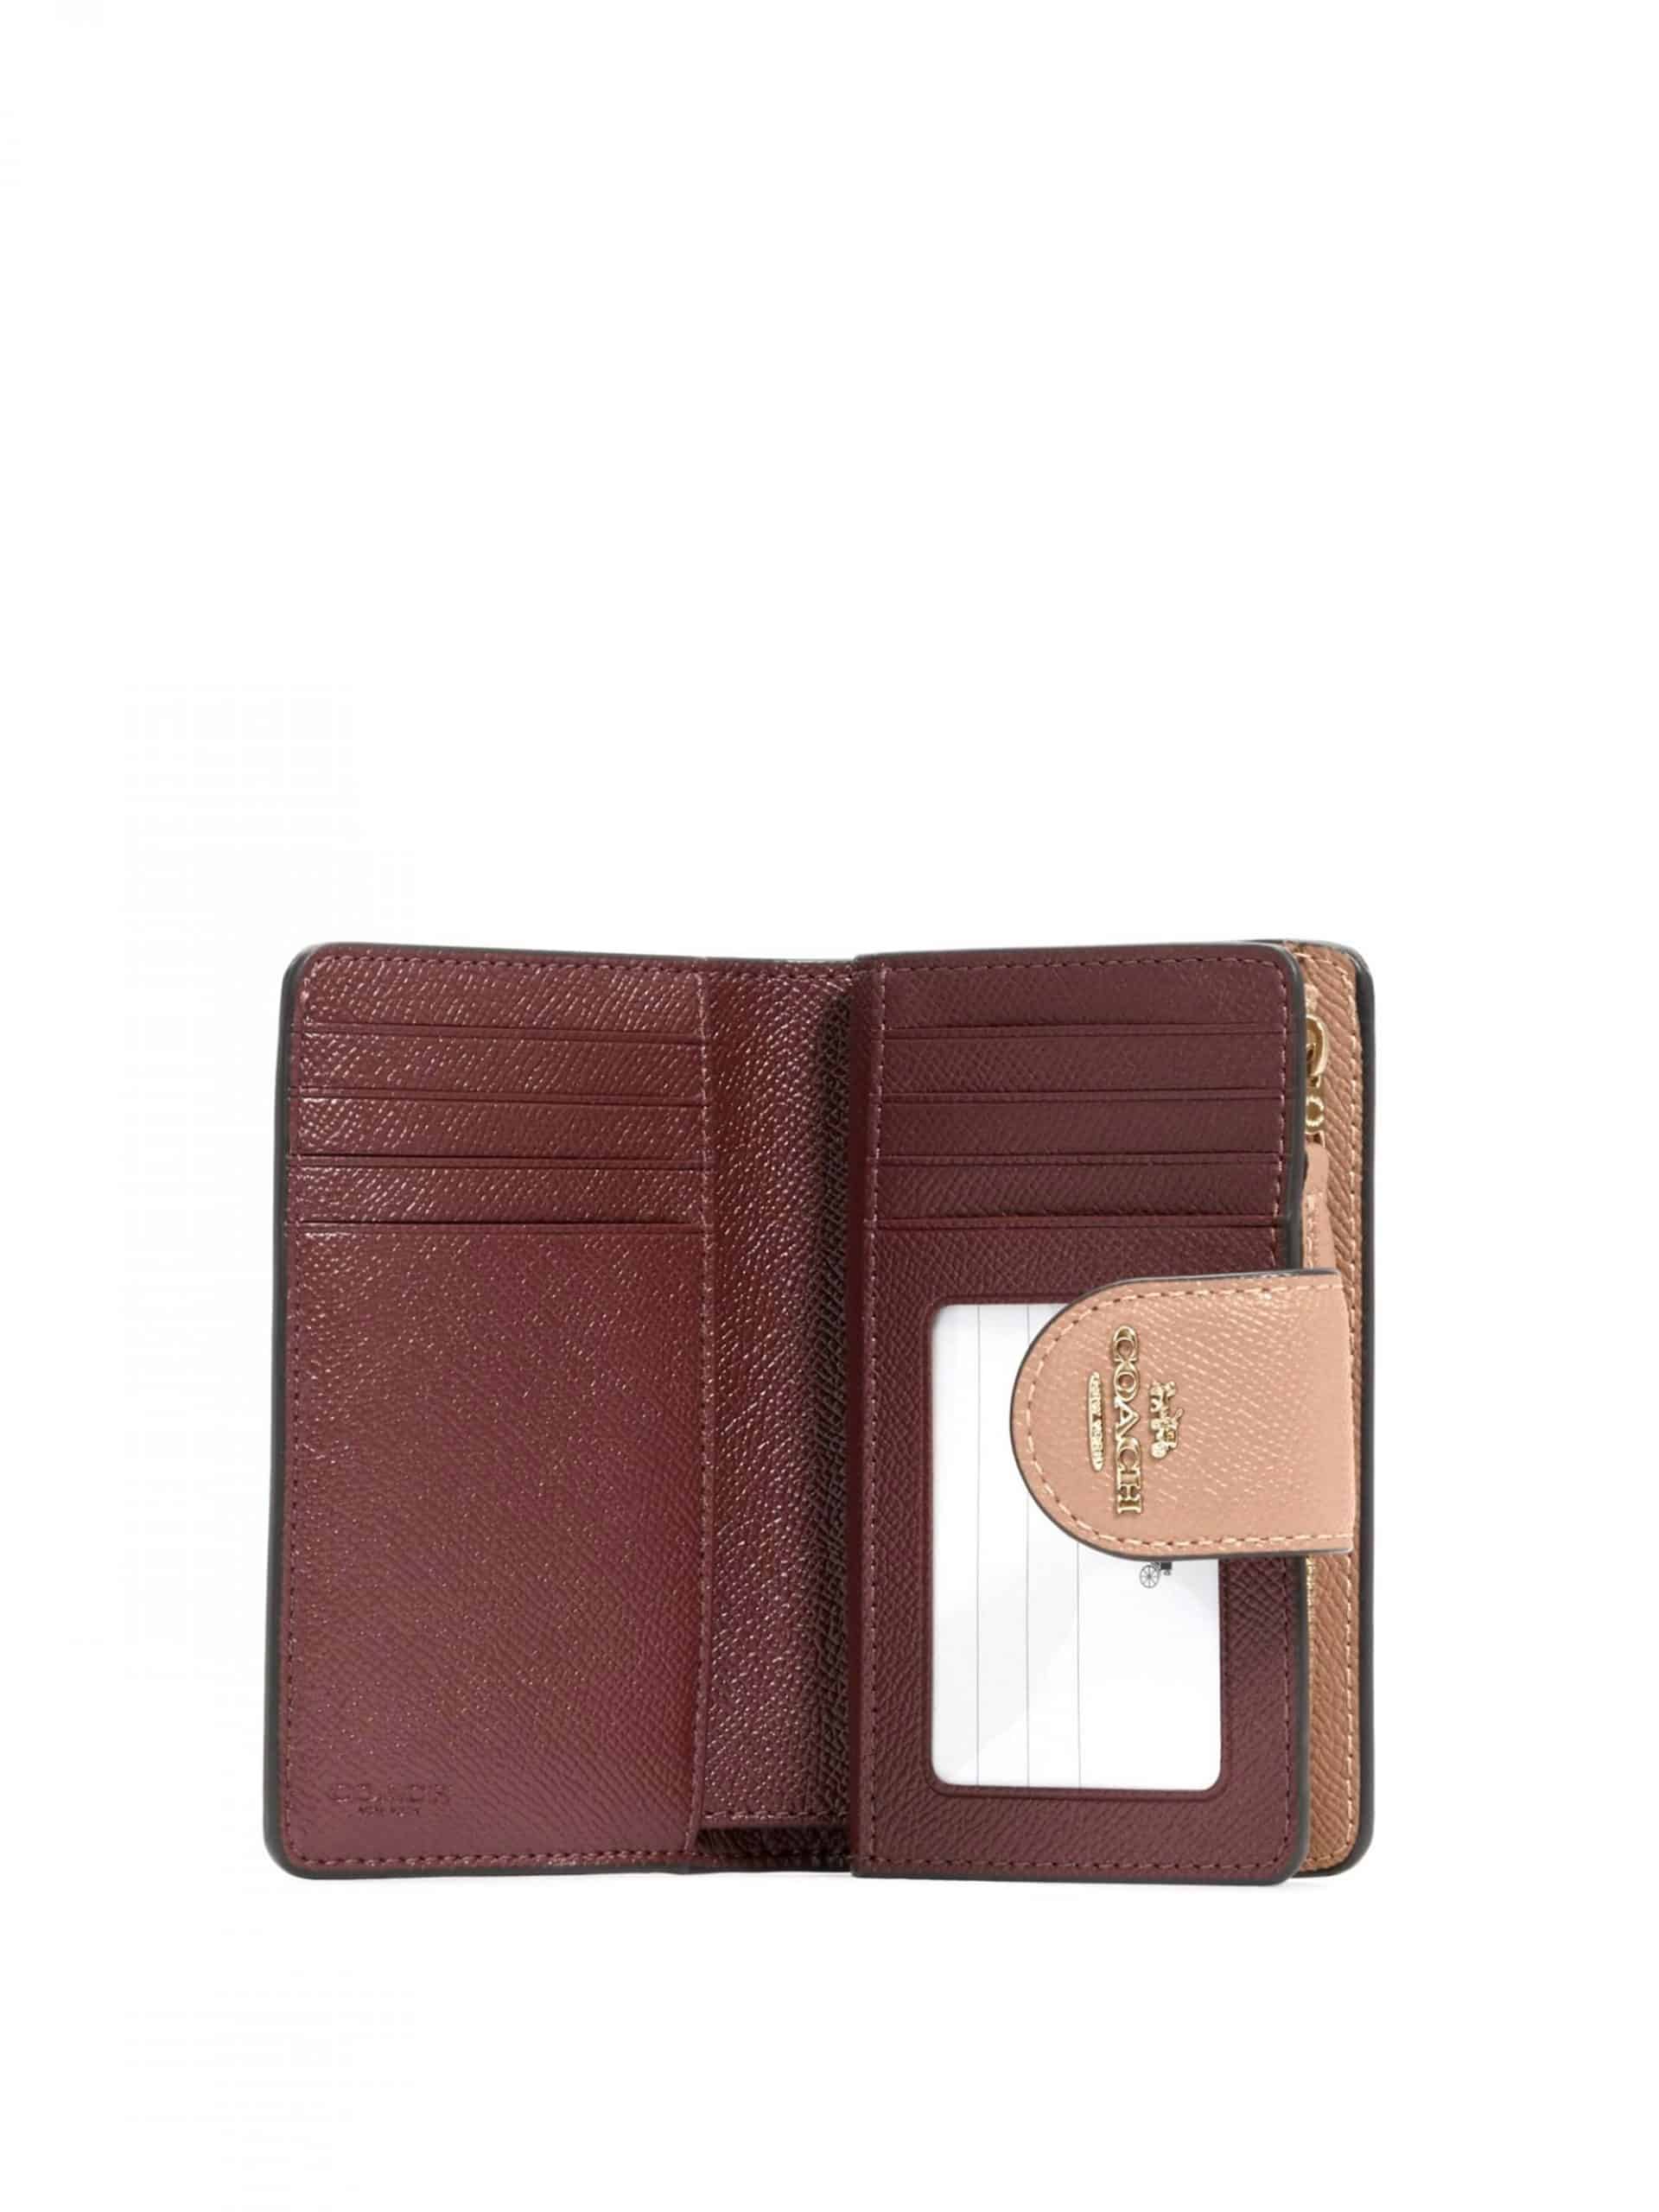 COACH ☜UNBOXING☞ Medium Corner Zip Wallet / 6390 / Red 